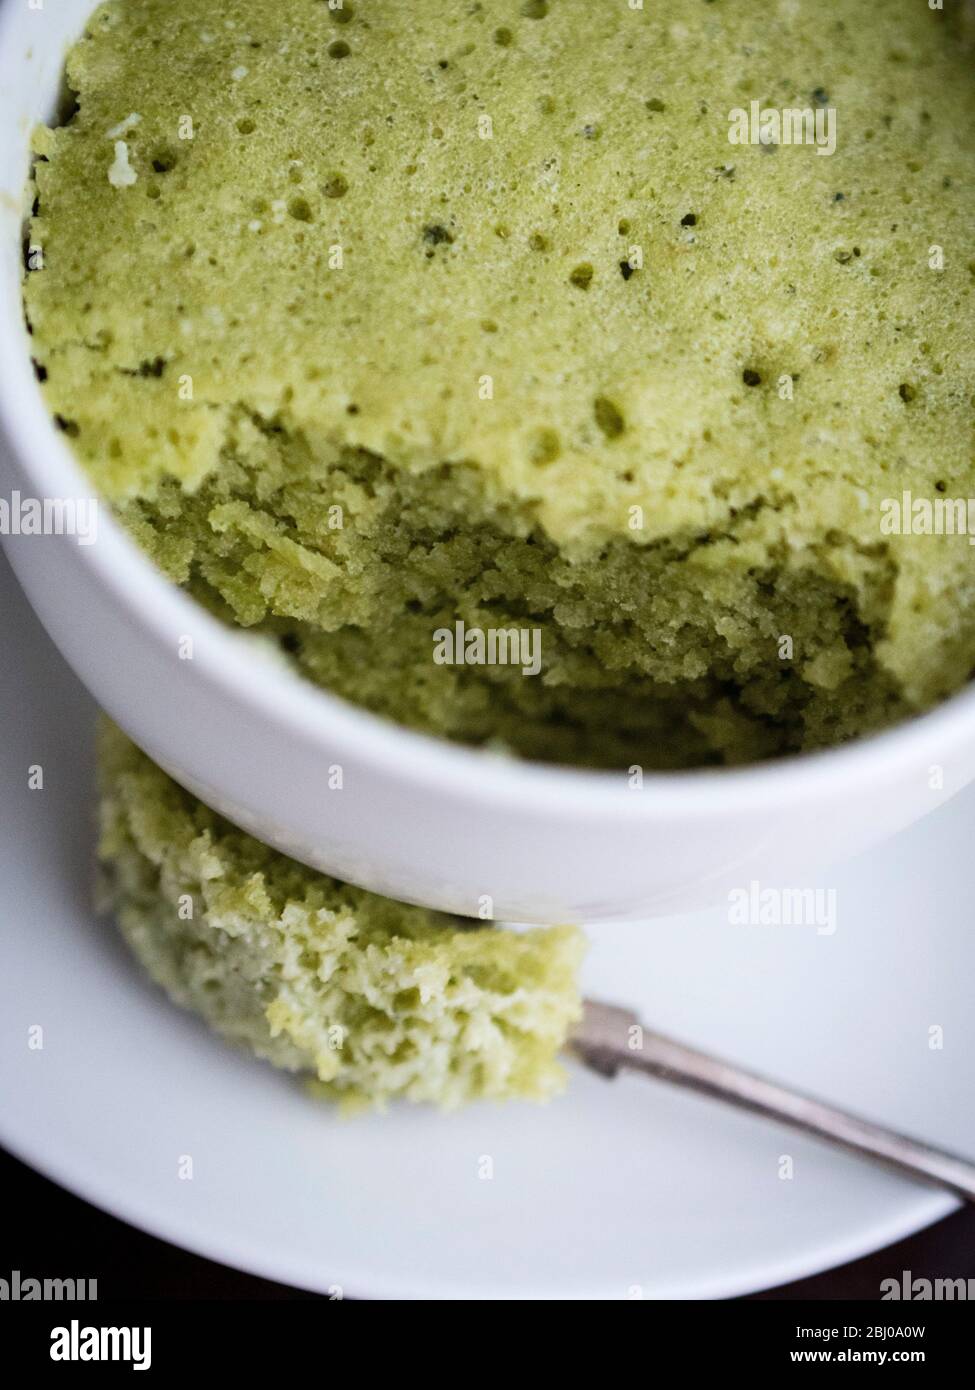 Deliciosa tarta sencilla hecha con almendras molidas y té verde matcha en polvo, horneada en una taza en un horno de microondas. Foto de stock